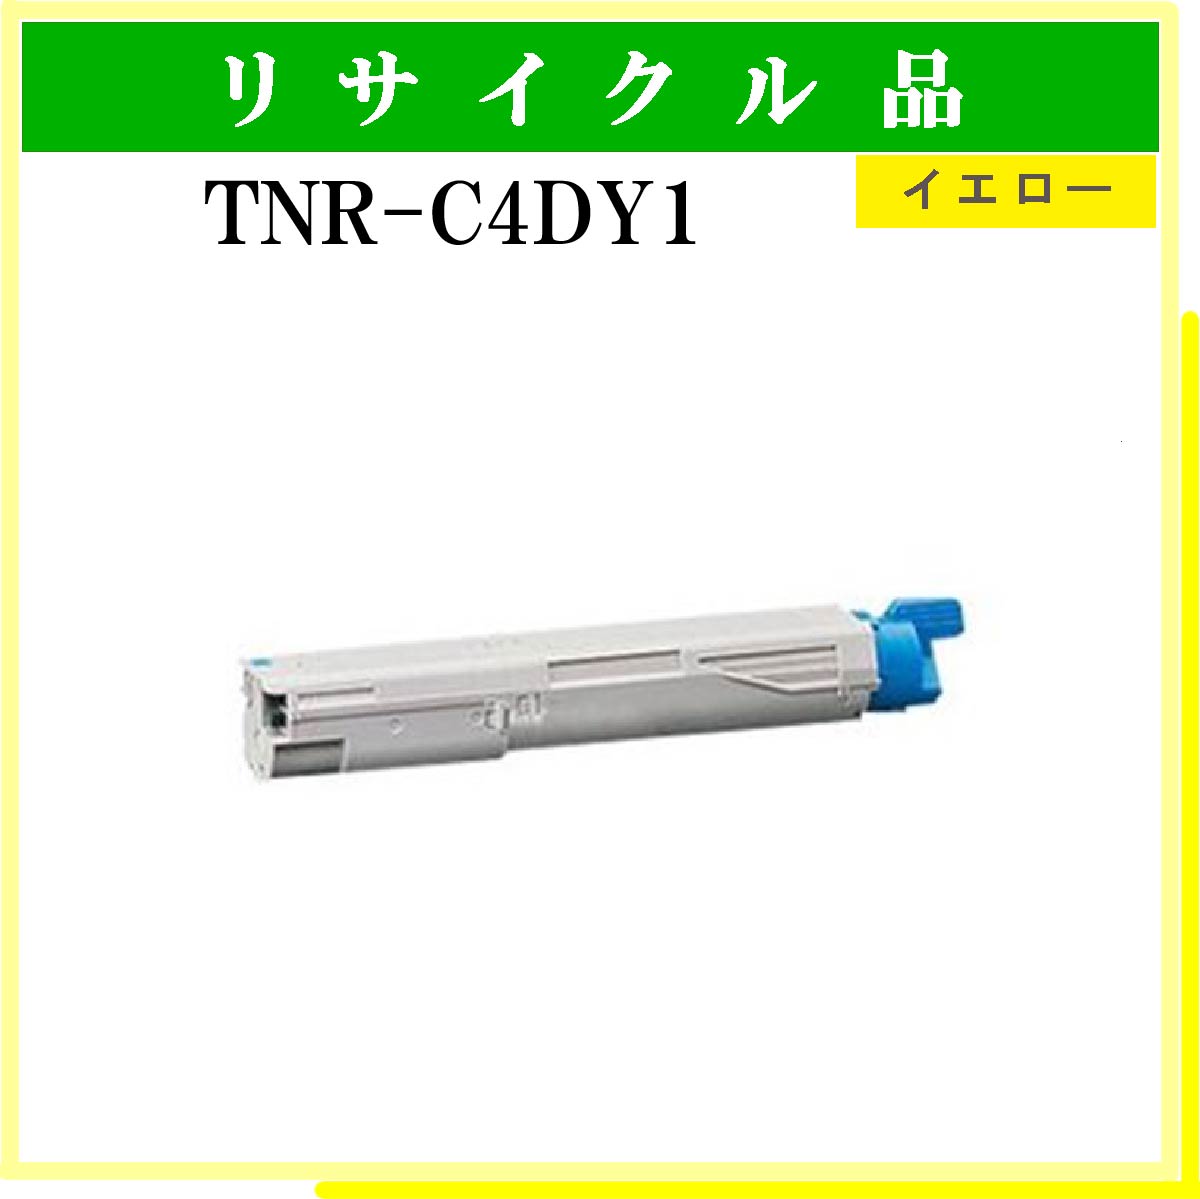 TNR-C4DY1